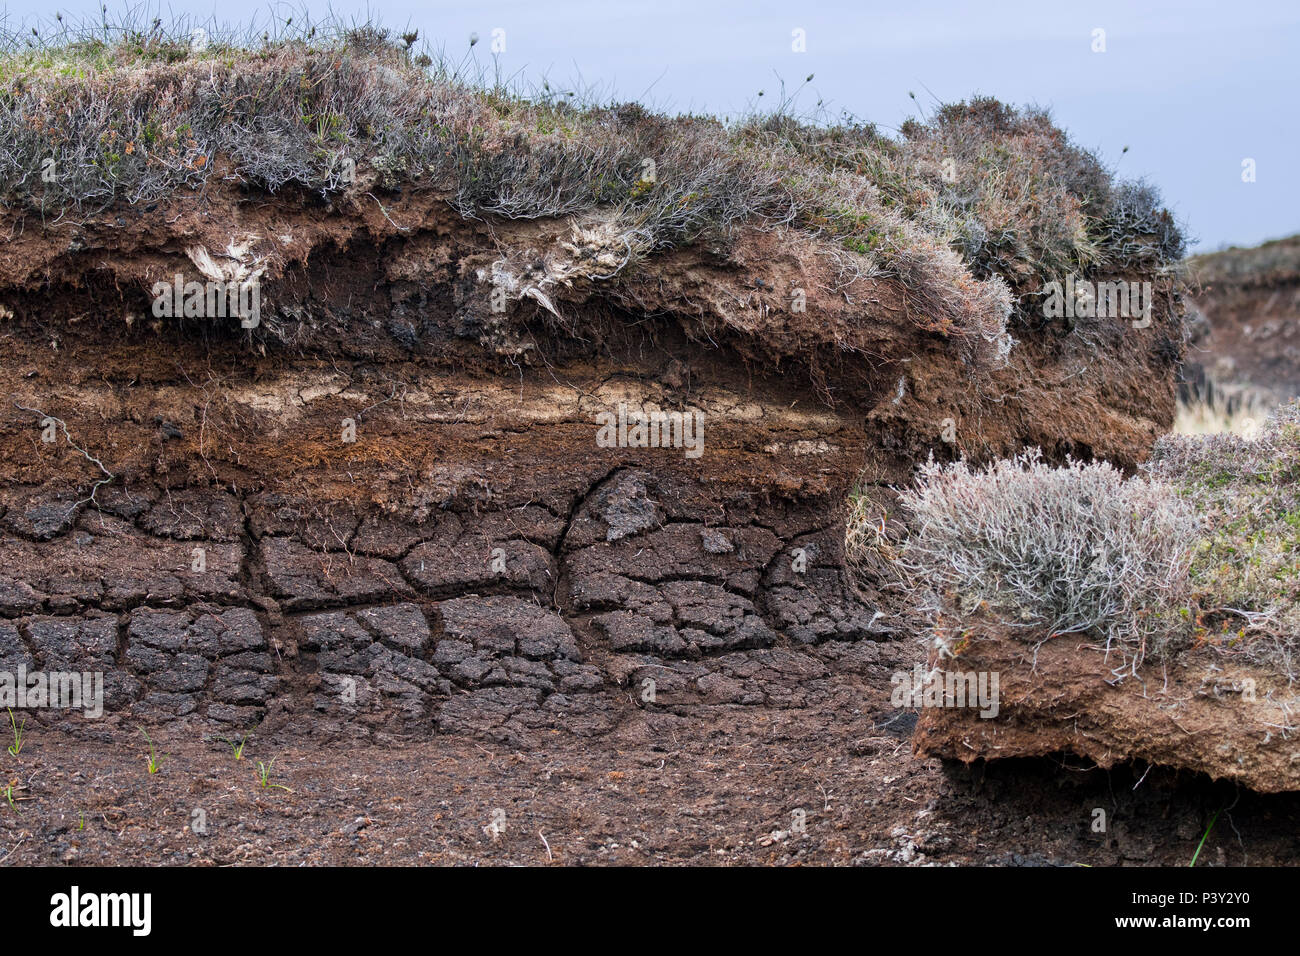 Torf hag mit freiliegenden Schichten rasen, verfallenen Vegetation, durch Erosion in Heideland, Schottland, Großbritannien Stockfoto